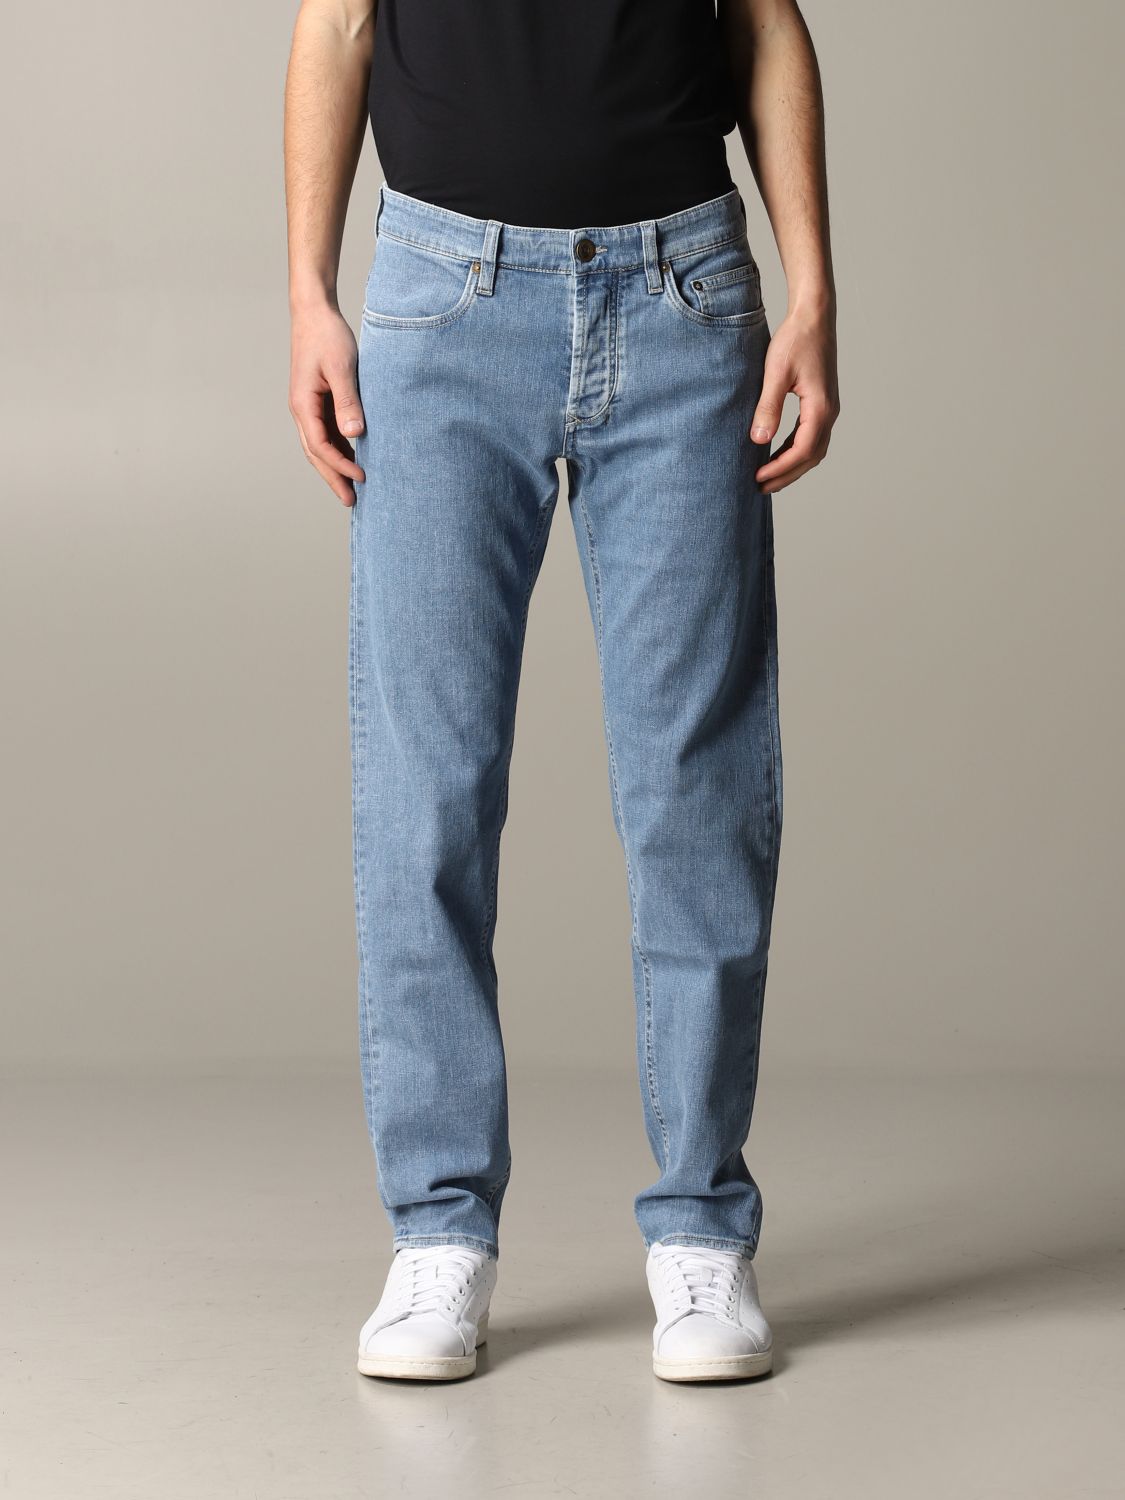 SIVIGLIA: Sevilla slim fit jeans with | Jeans Men Stone Washed | Siviglia 23M2 S478 GIGLIO.COM